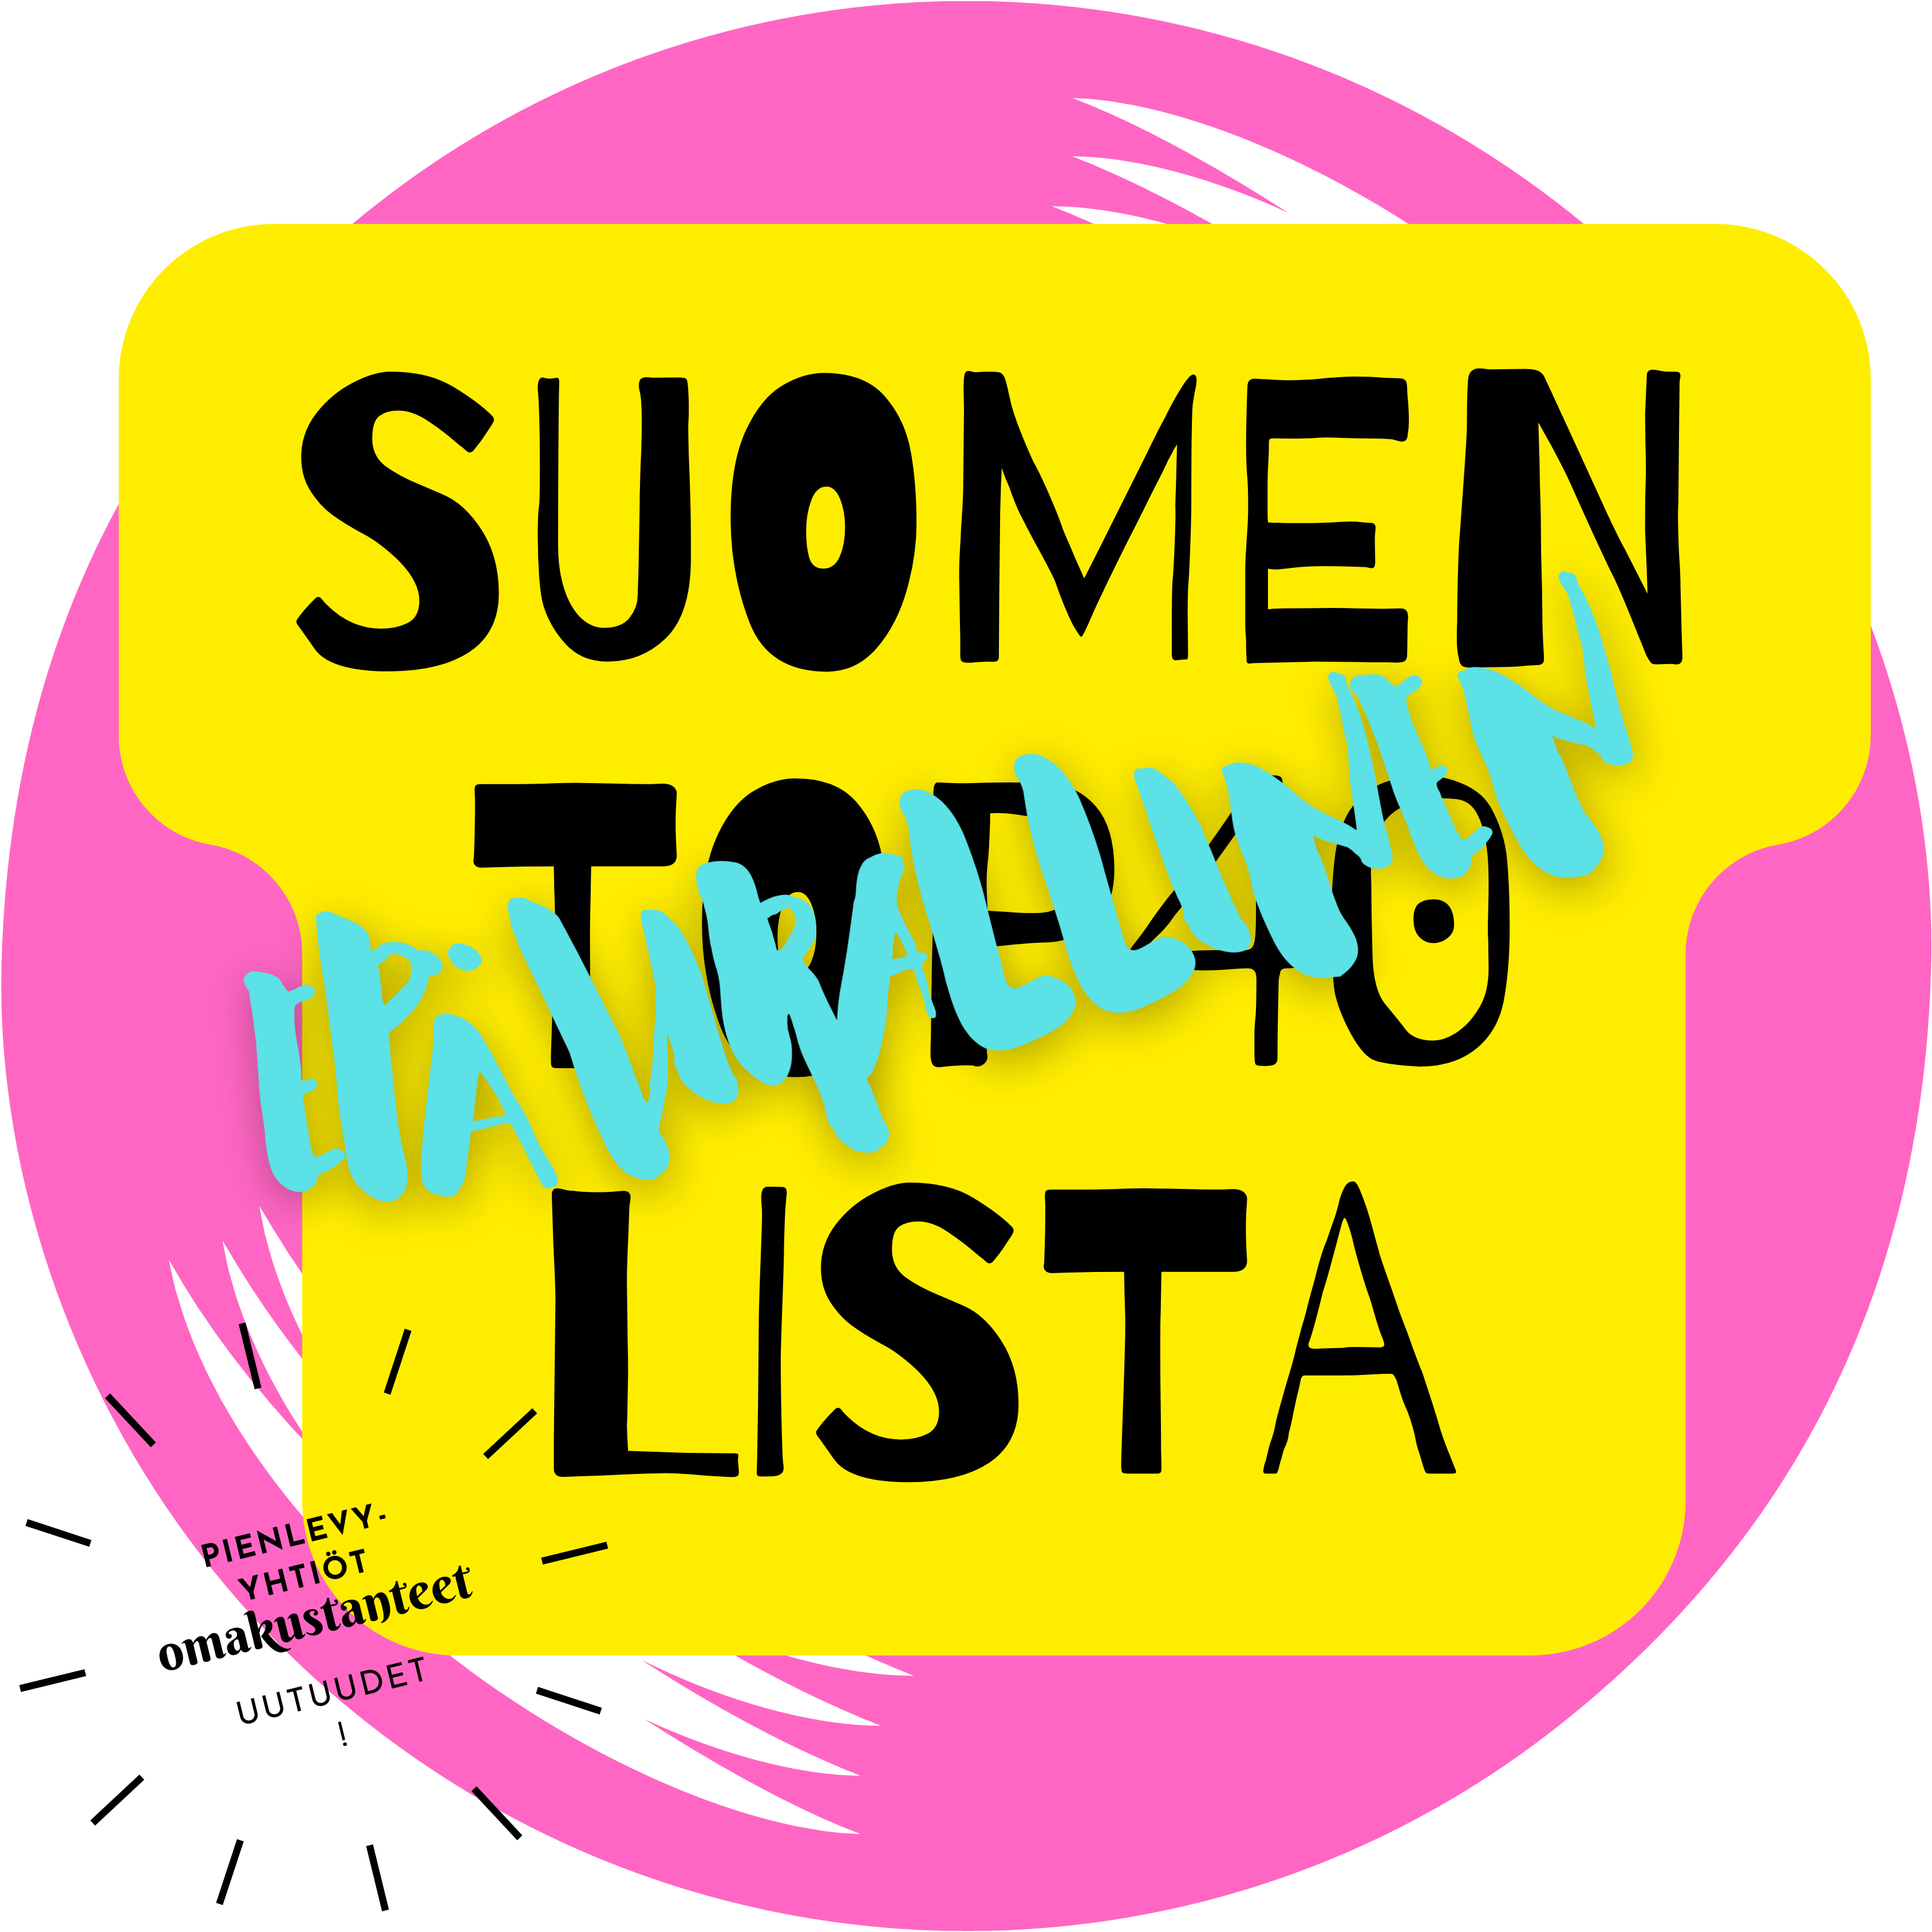 Suomen Epävirallinen Lista TOP 40 – #1: Mitä, miten ja miksi?